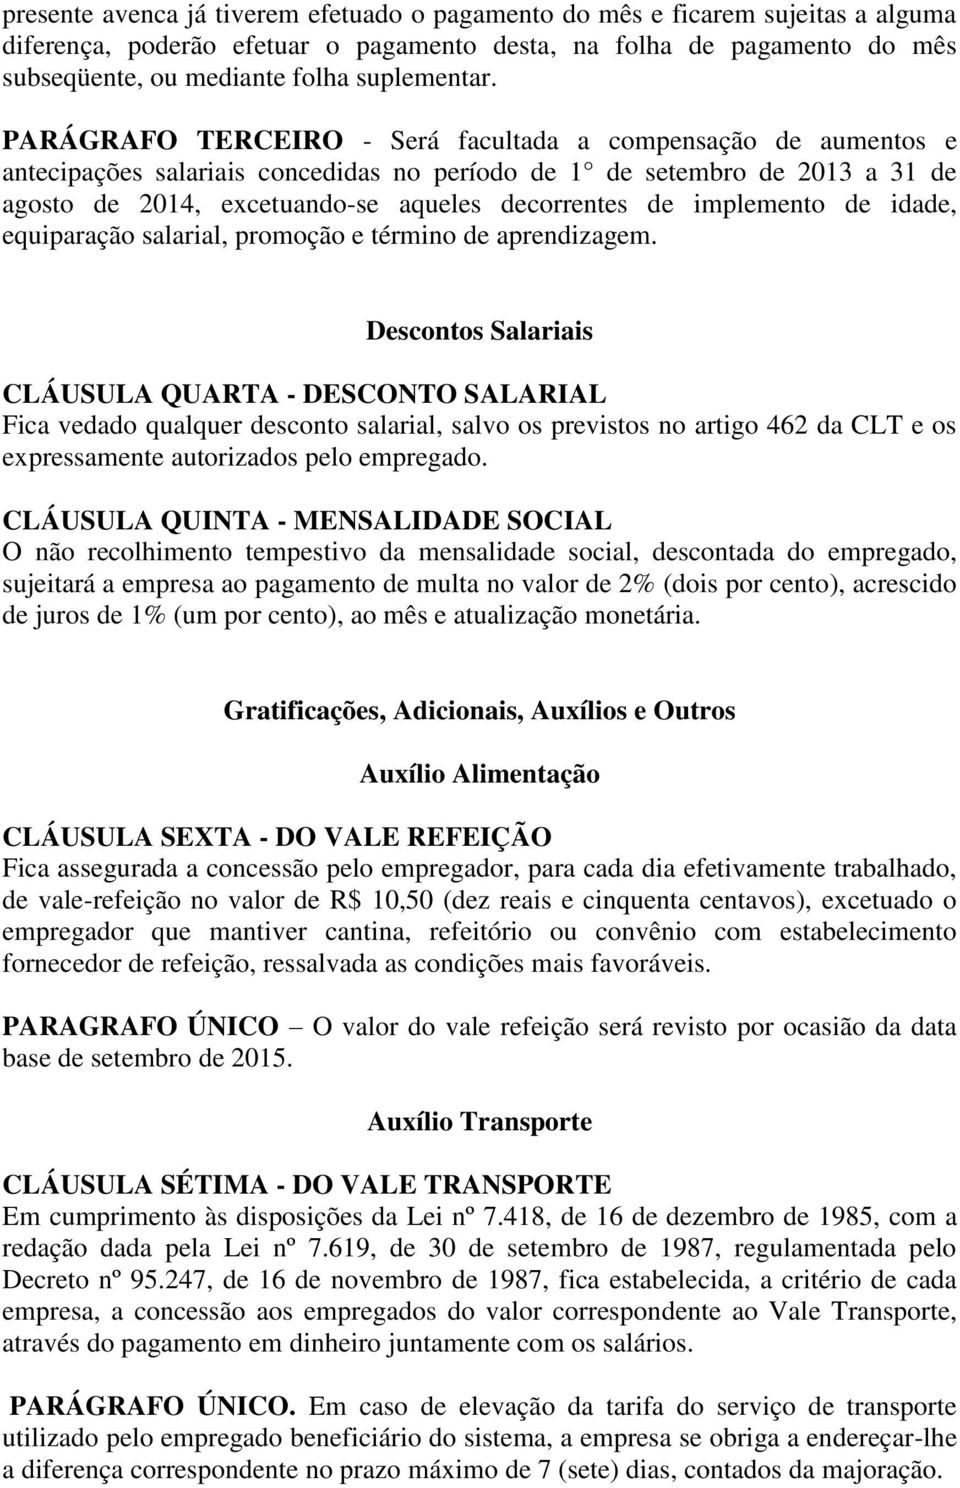 PARÁGRAFO TERCEIRO - Será facultada a compensação de aumentos e antecipações salariais concedidas no período de 1 de setembro de 2013 a 31 de agosto de 2014, excetuando-se aqueles decorrentes de